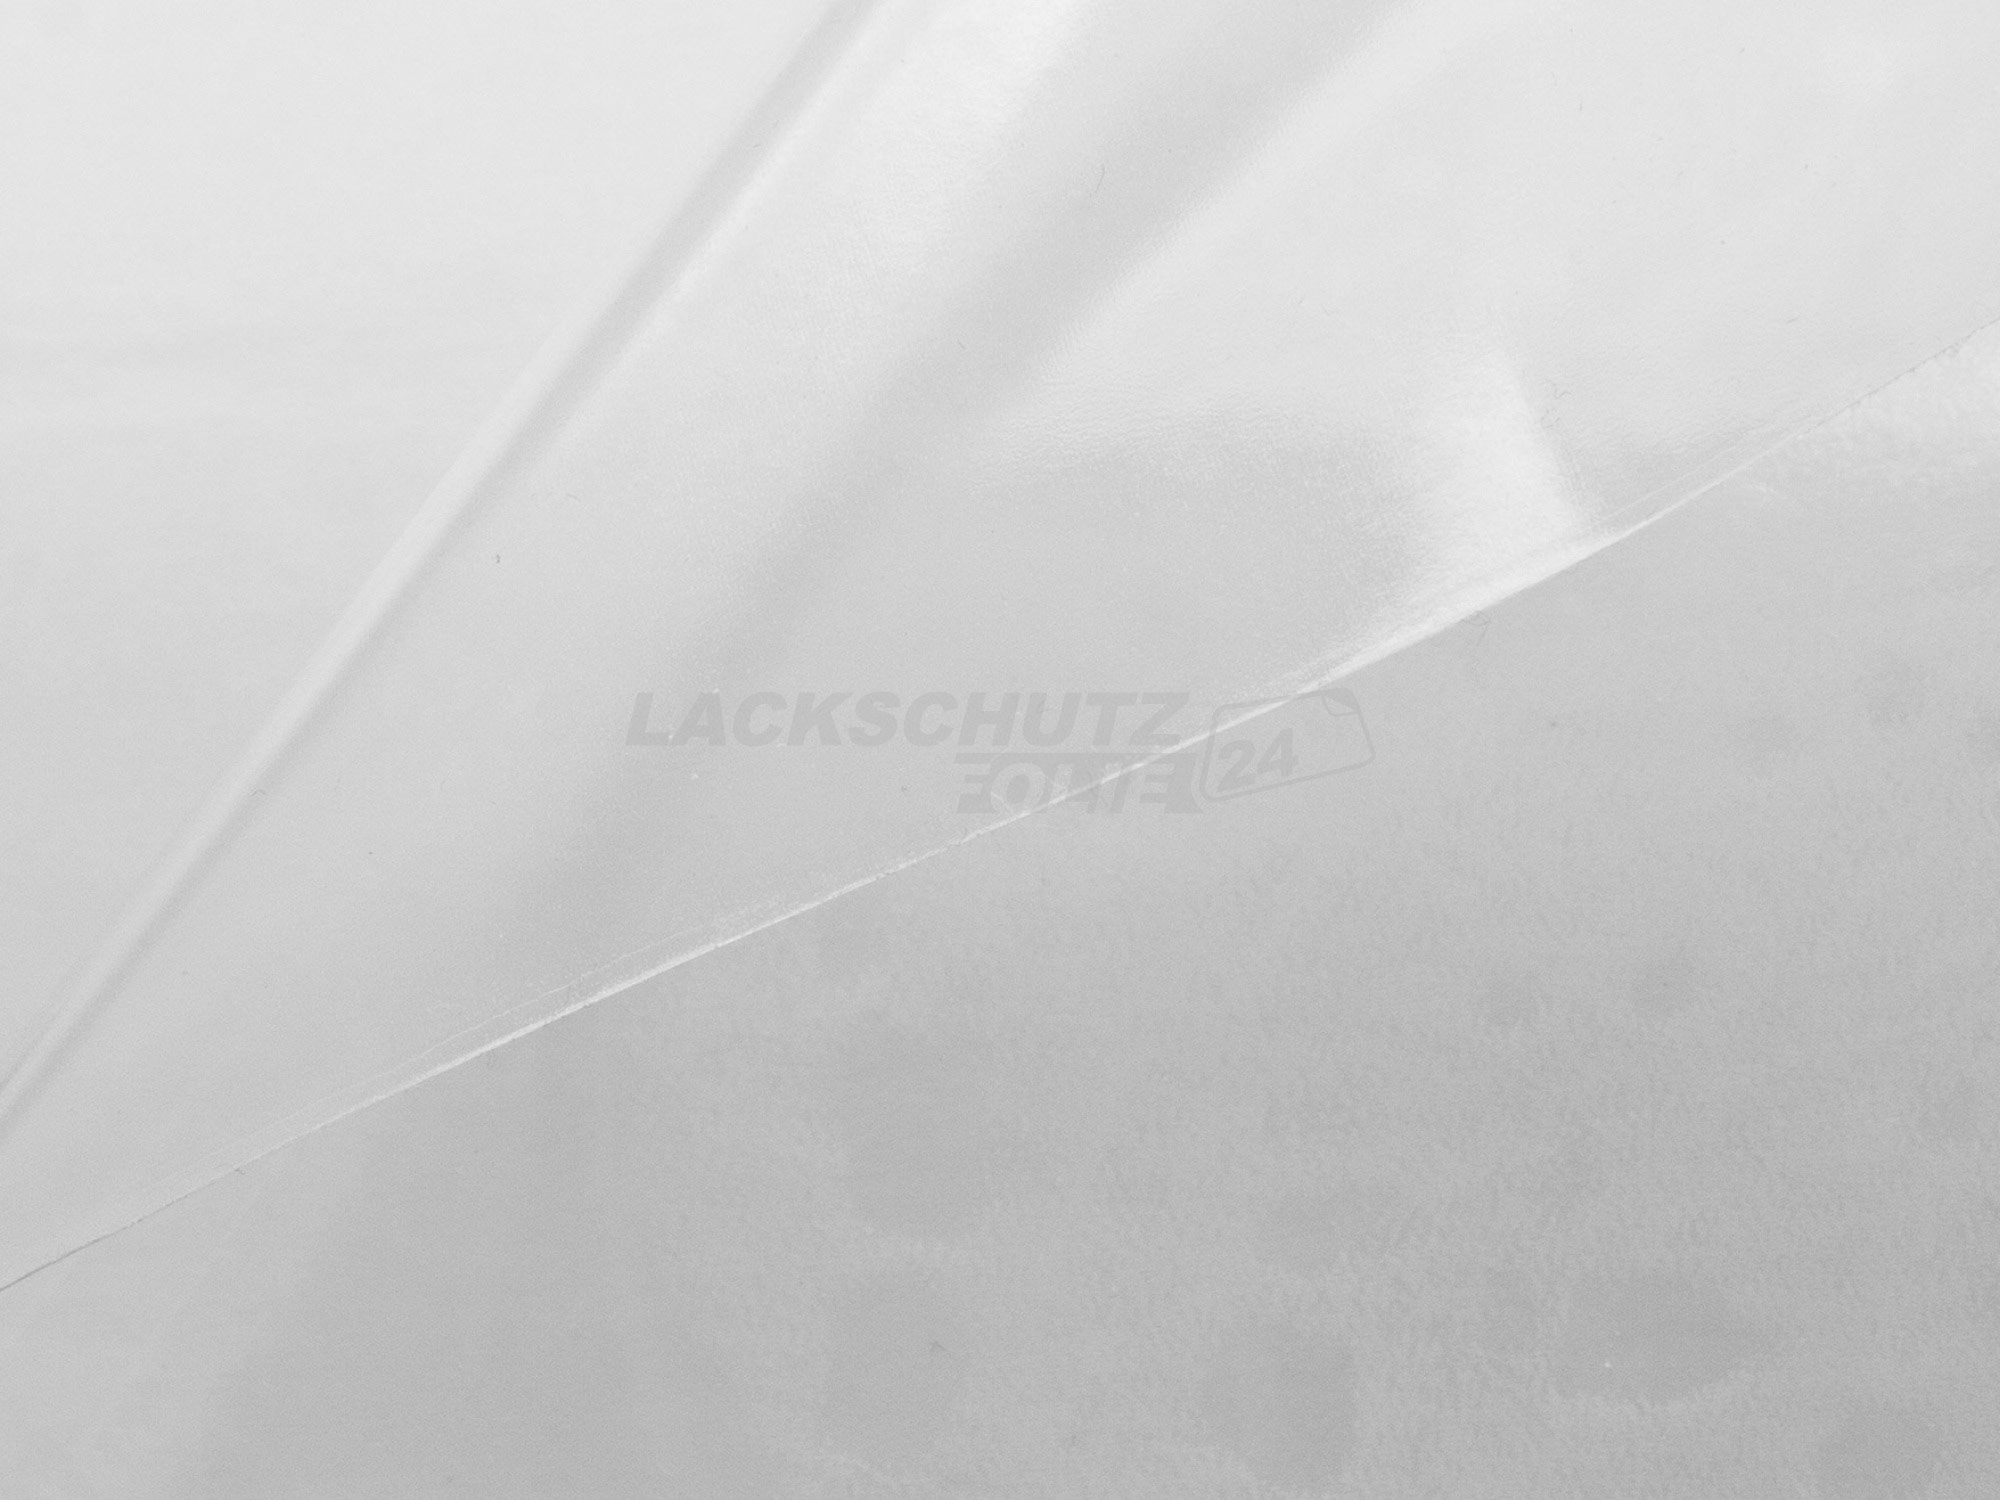 Ladekantenschutzfolie - Transparent Glatt Hochglänzend für Audi A4 Avant (Kombi) B6, Typ 8E, BJ 2001-2004